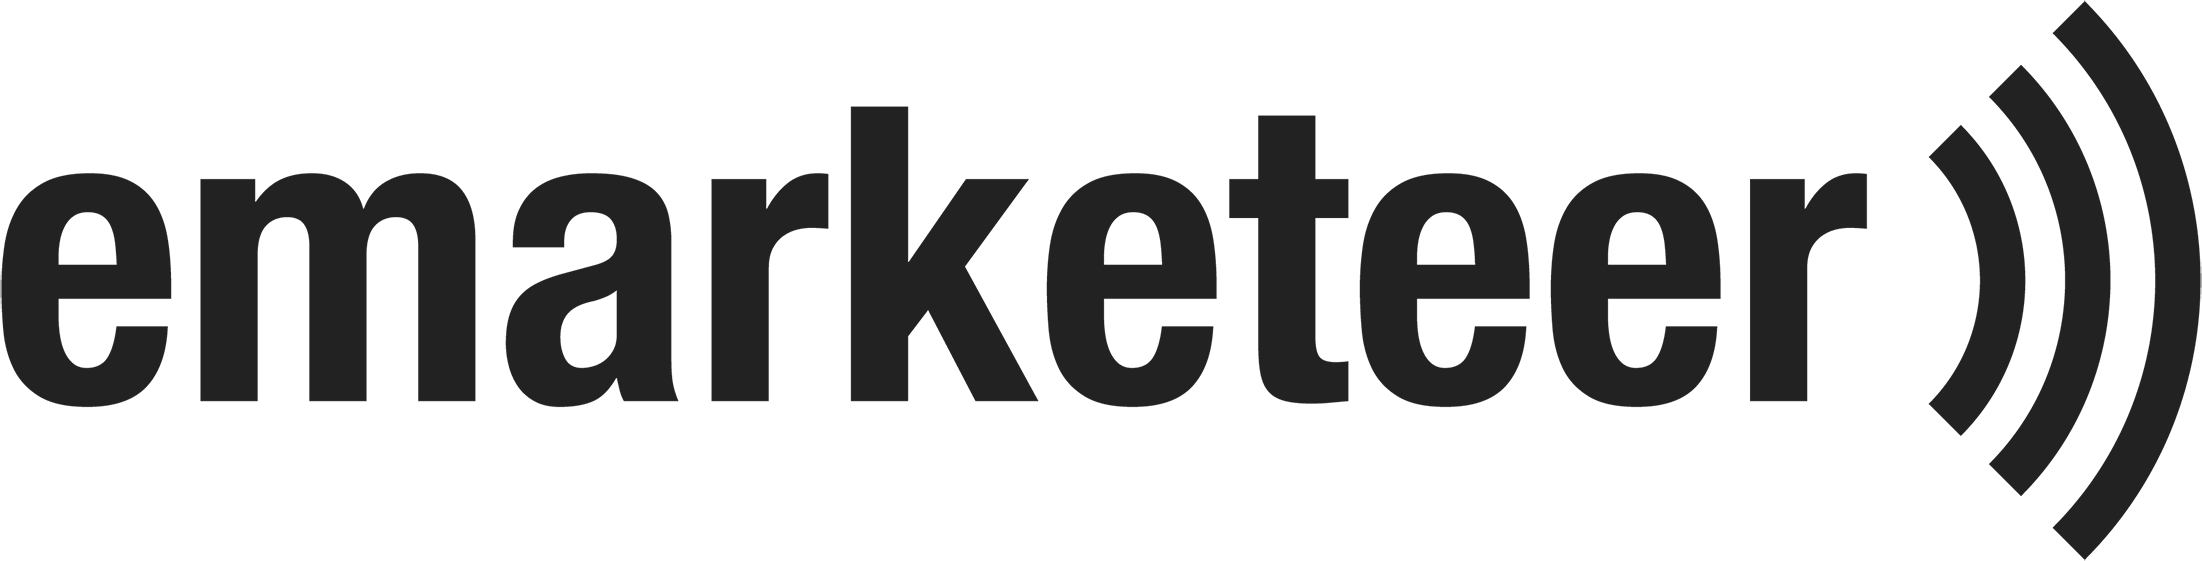 eMarketeer logo